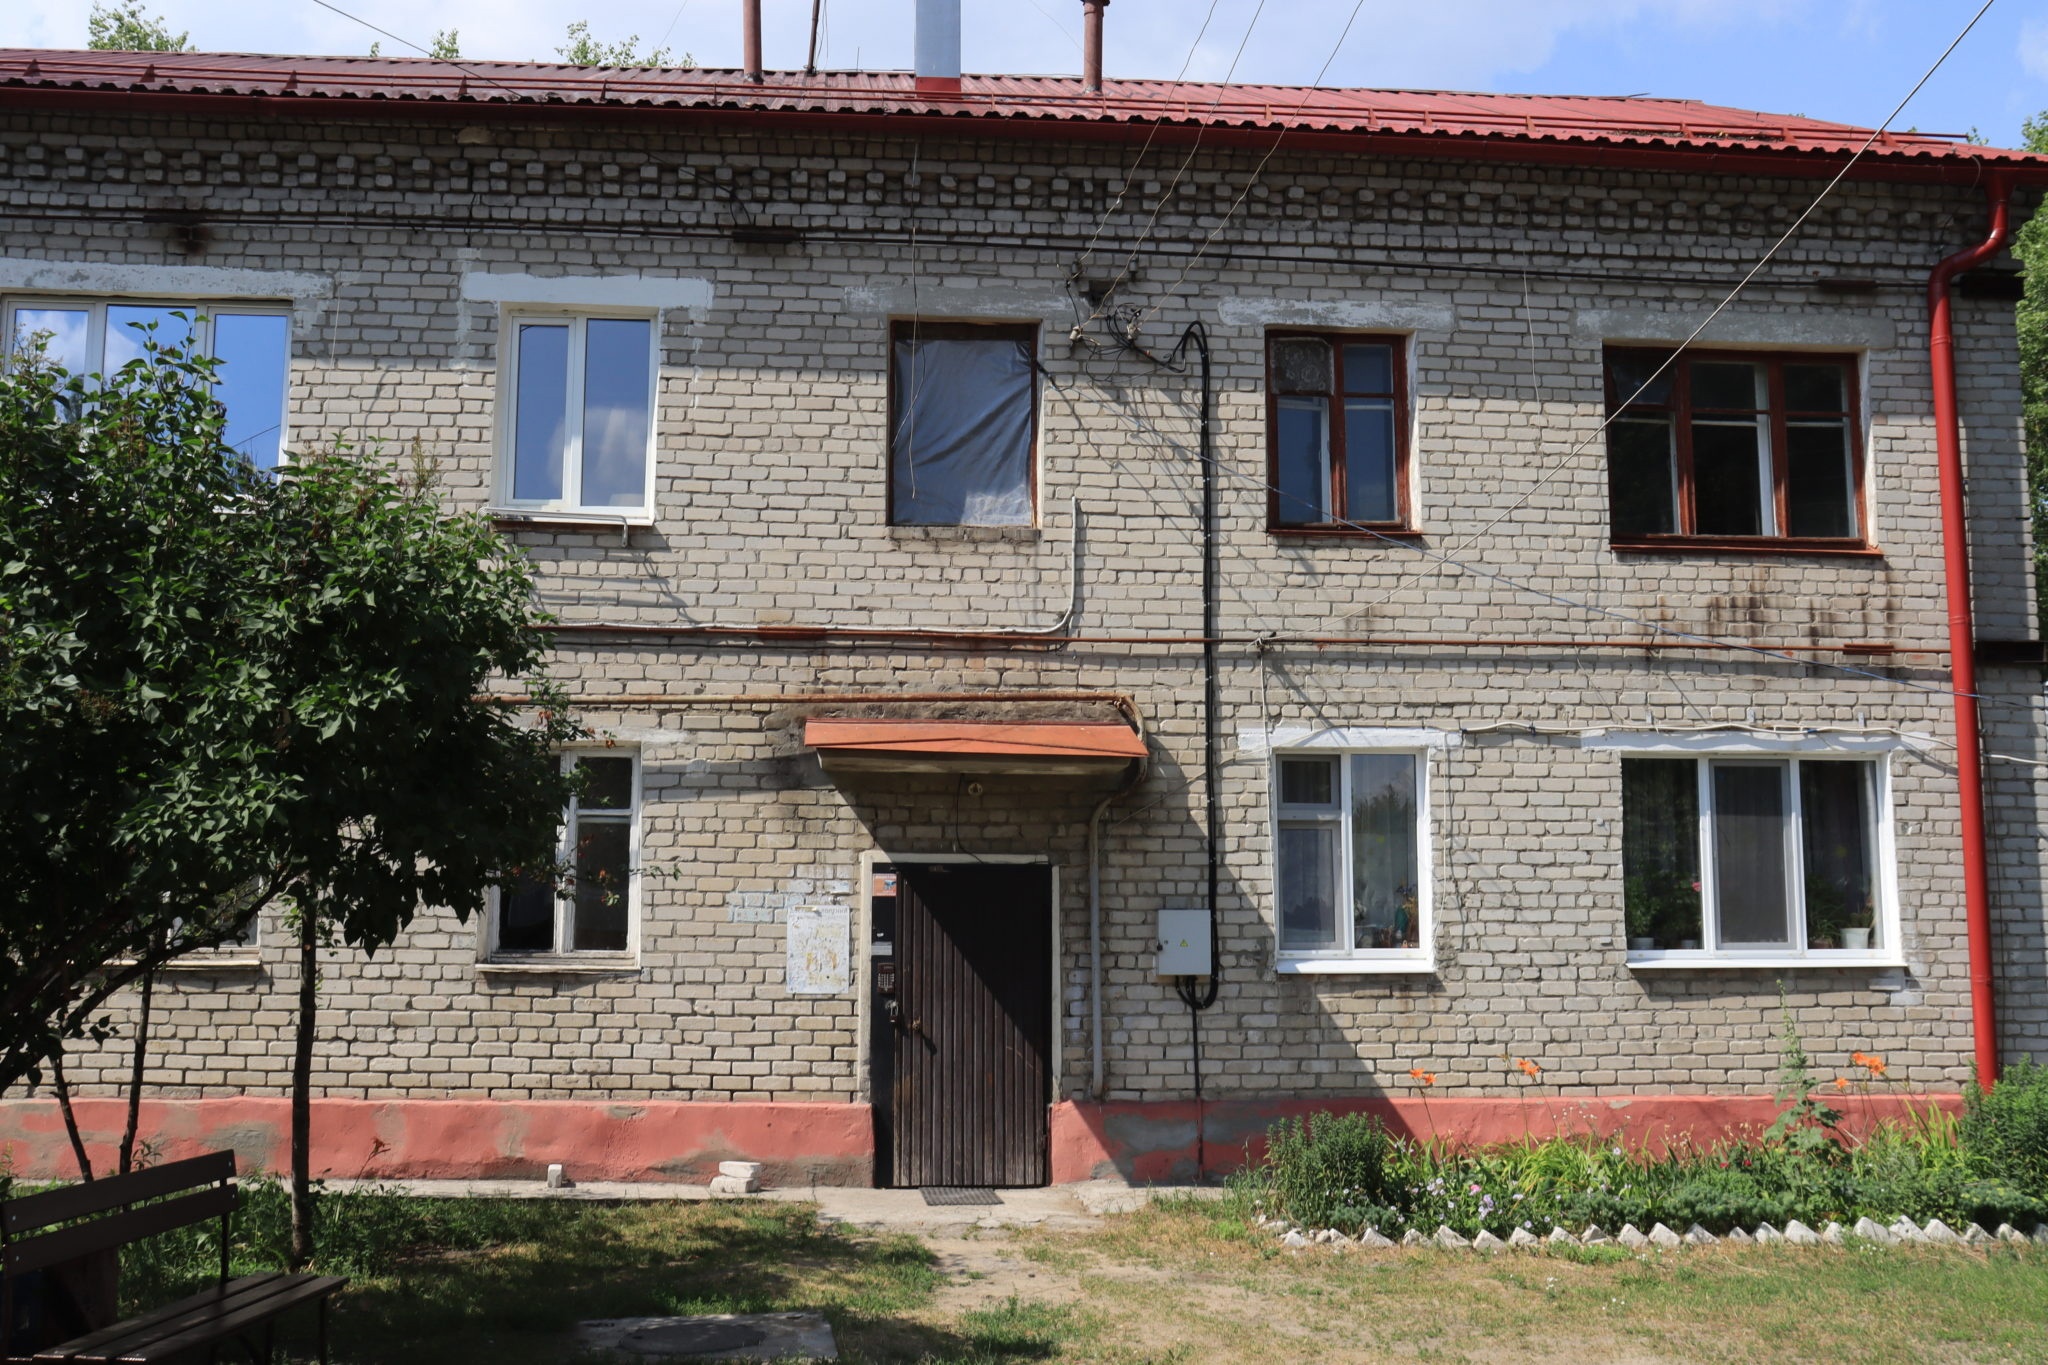 Дом на улице 11 лет Октября в Брянске будет восстановлен